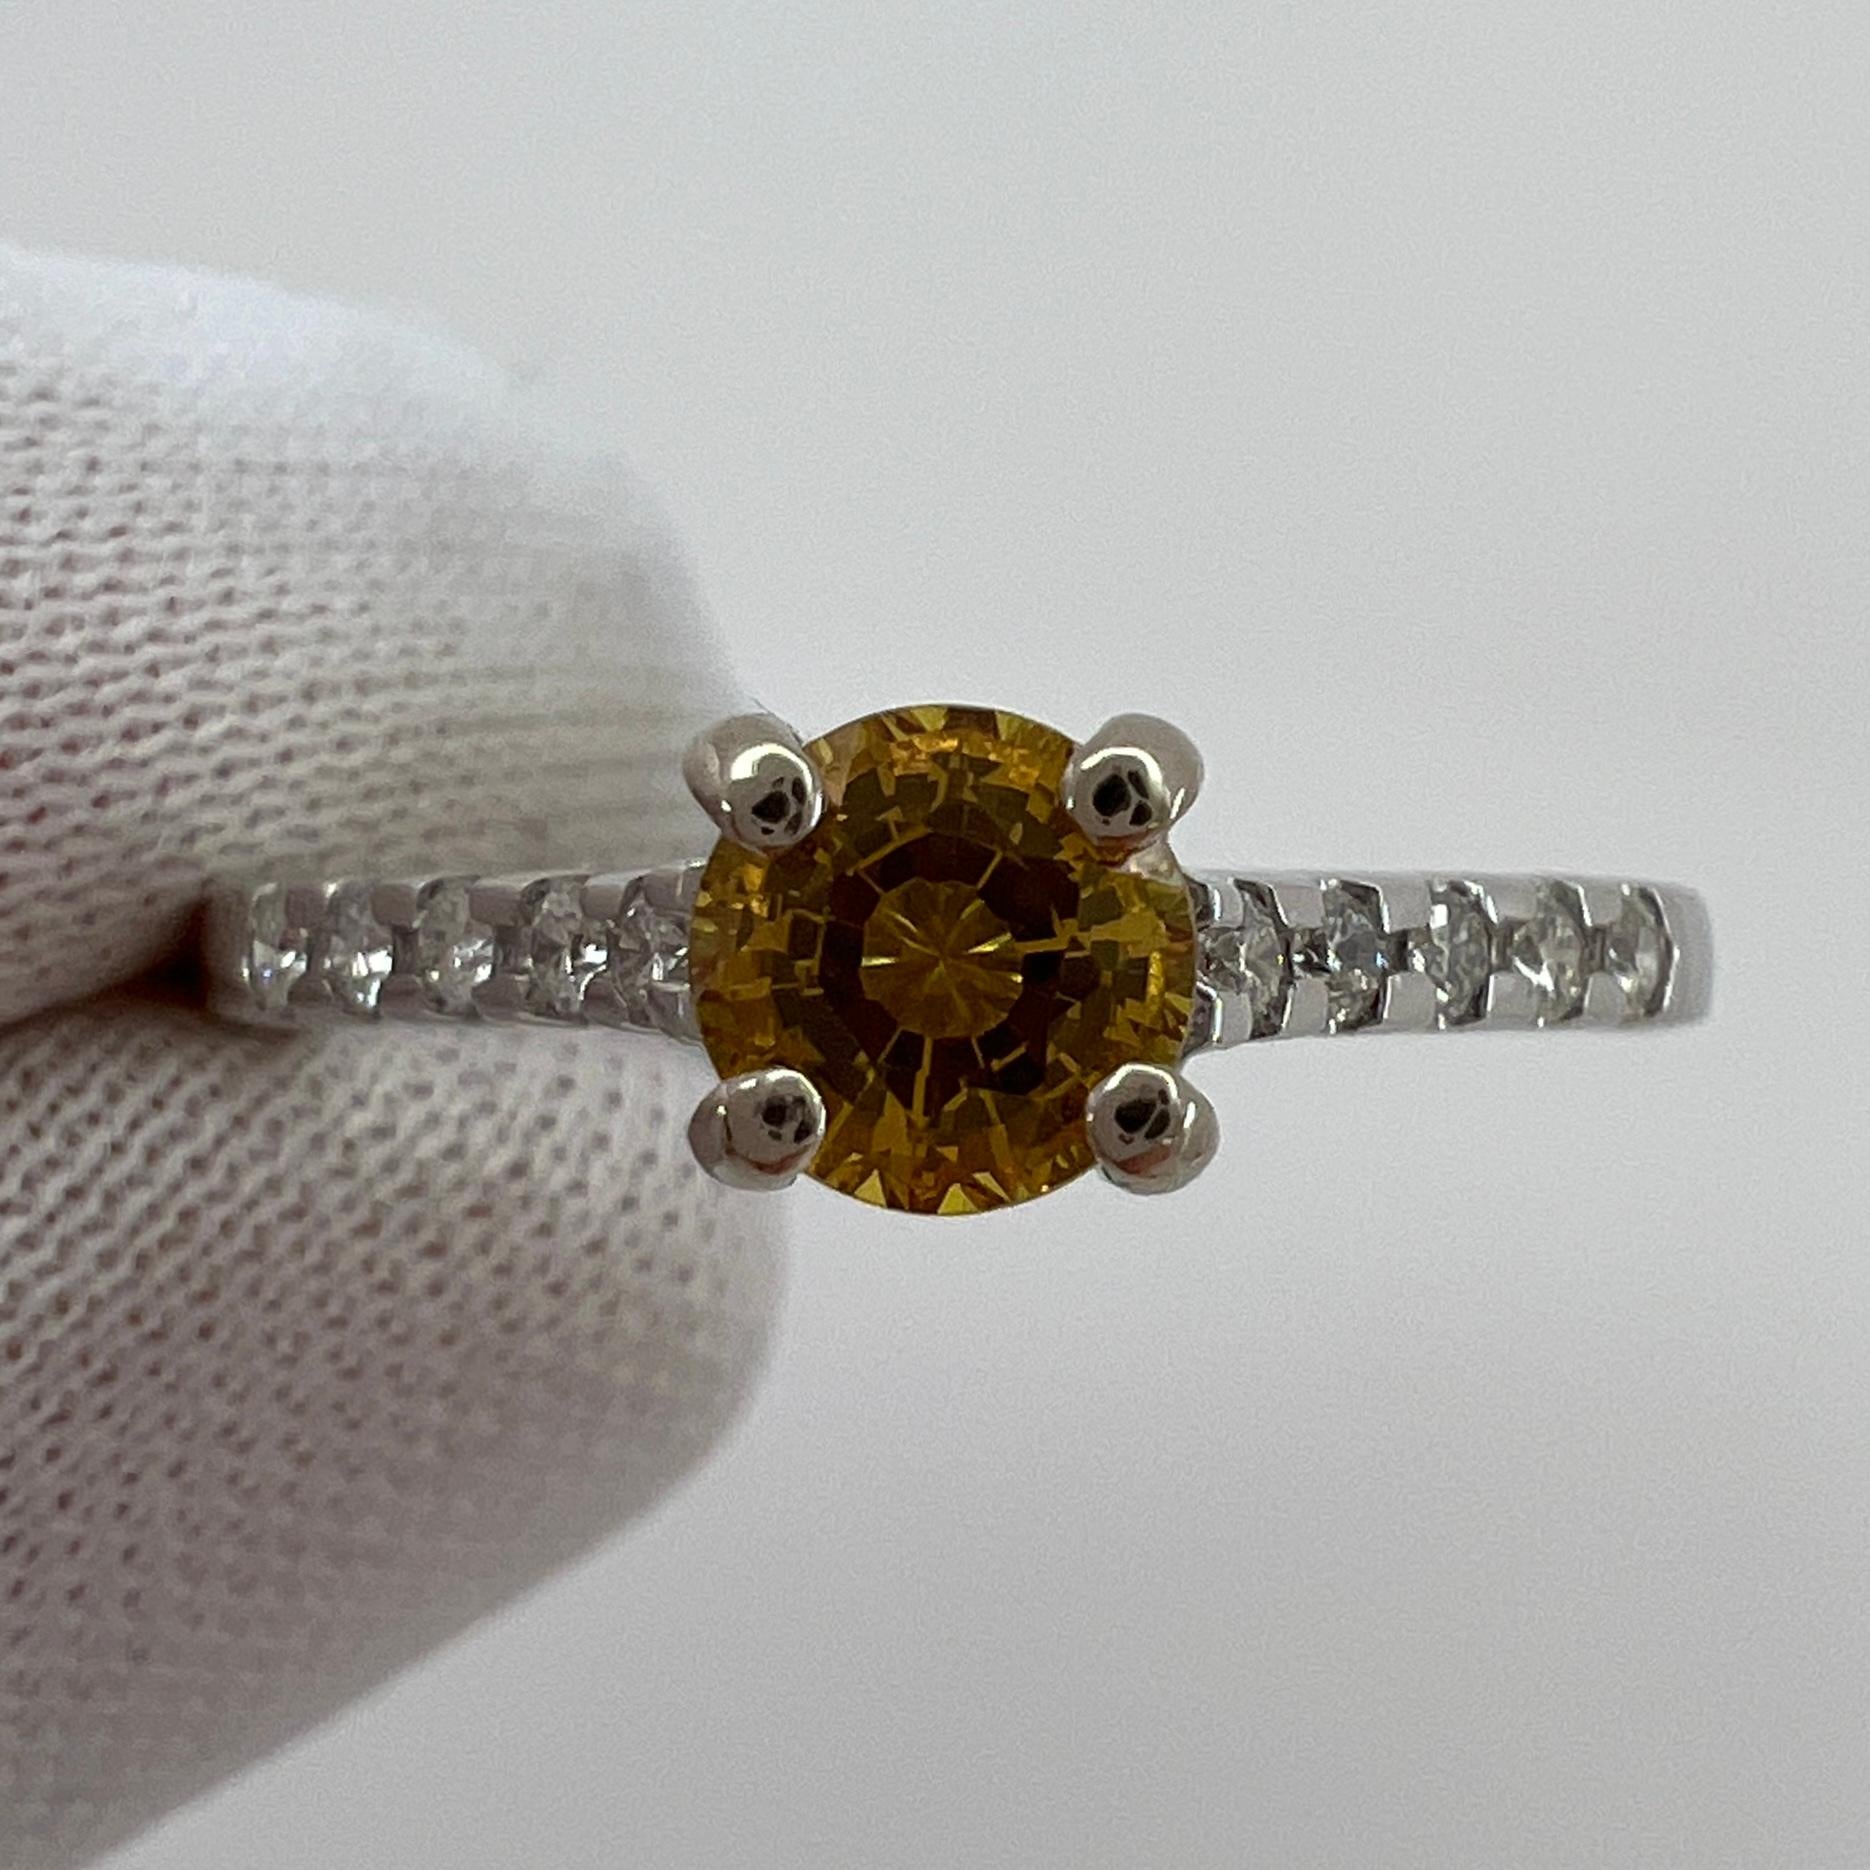 Natürlicher lebendiger gelb-oranger Ceylon-Saphir & Diamant-Ring.

0.63 Karat zentraler Saphir mit einer schönen tiefen, aber lebhaften Farbe und hervorragender Klarheit. sehr sauberer Stein.

Vollständig zertifiziert durch IGI Antwerpen, das